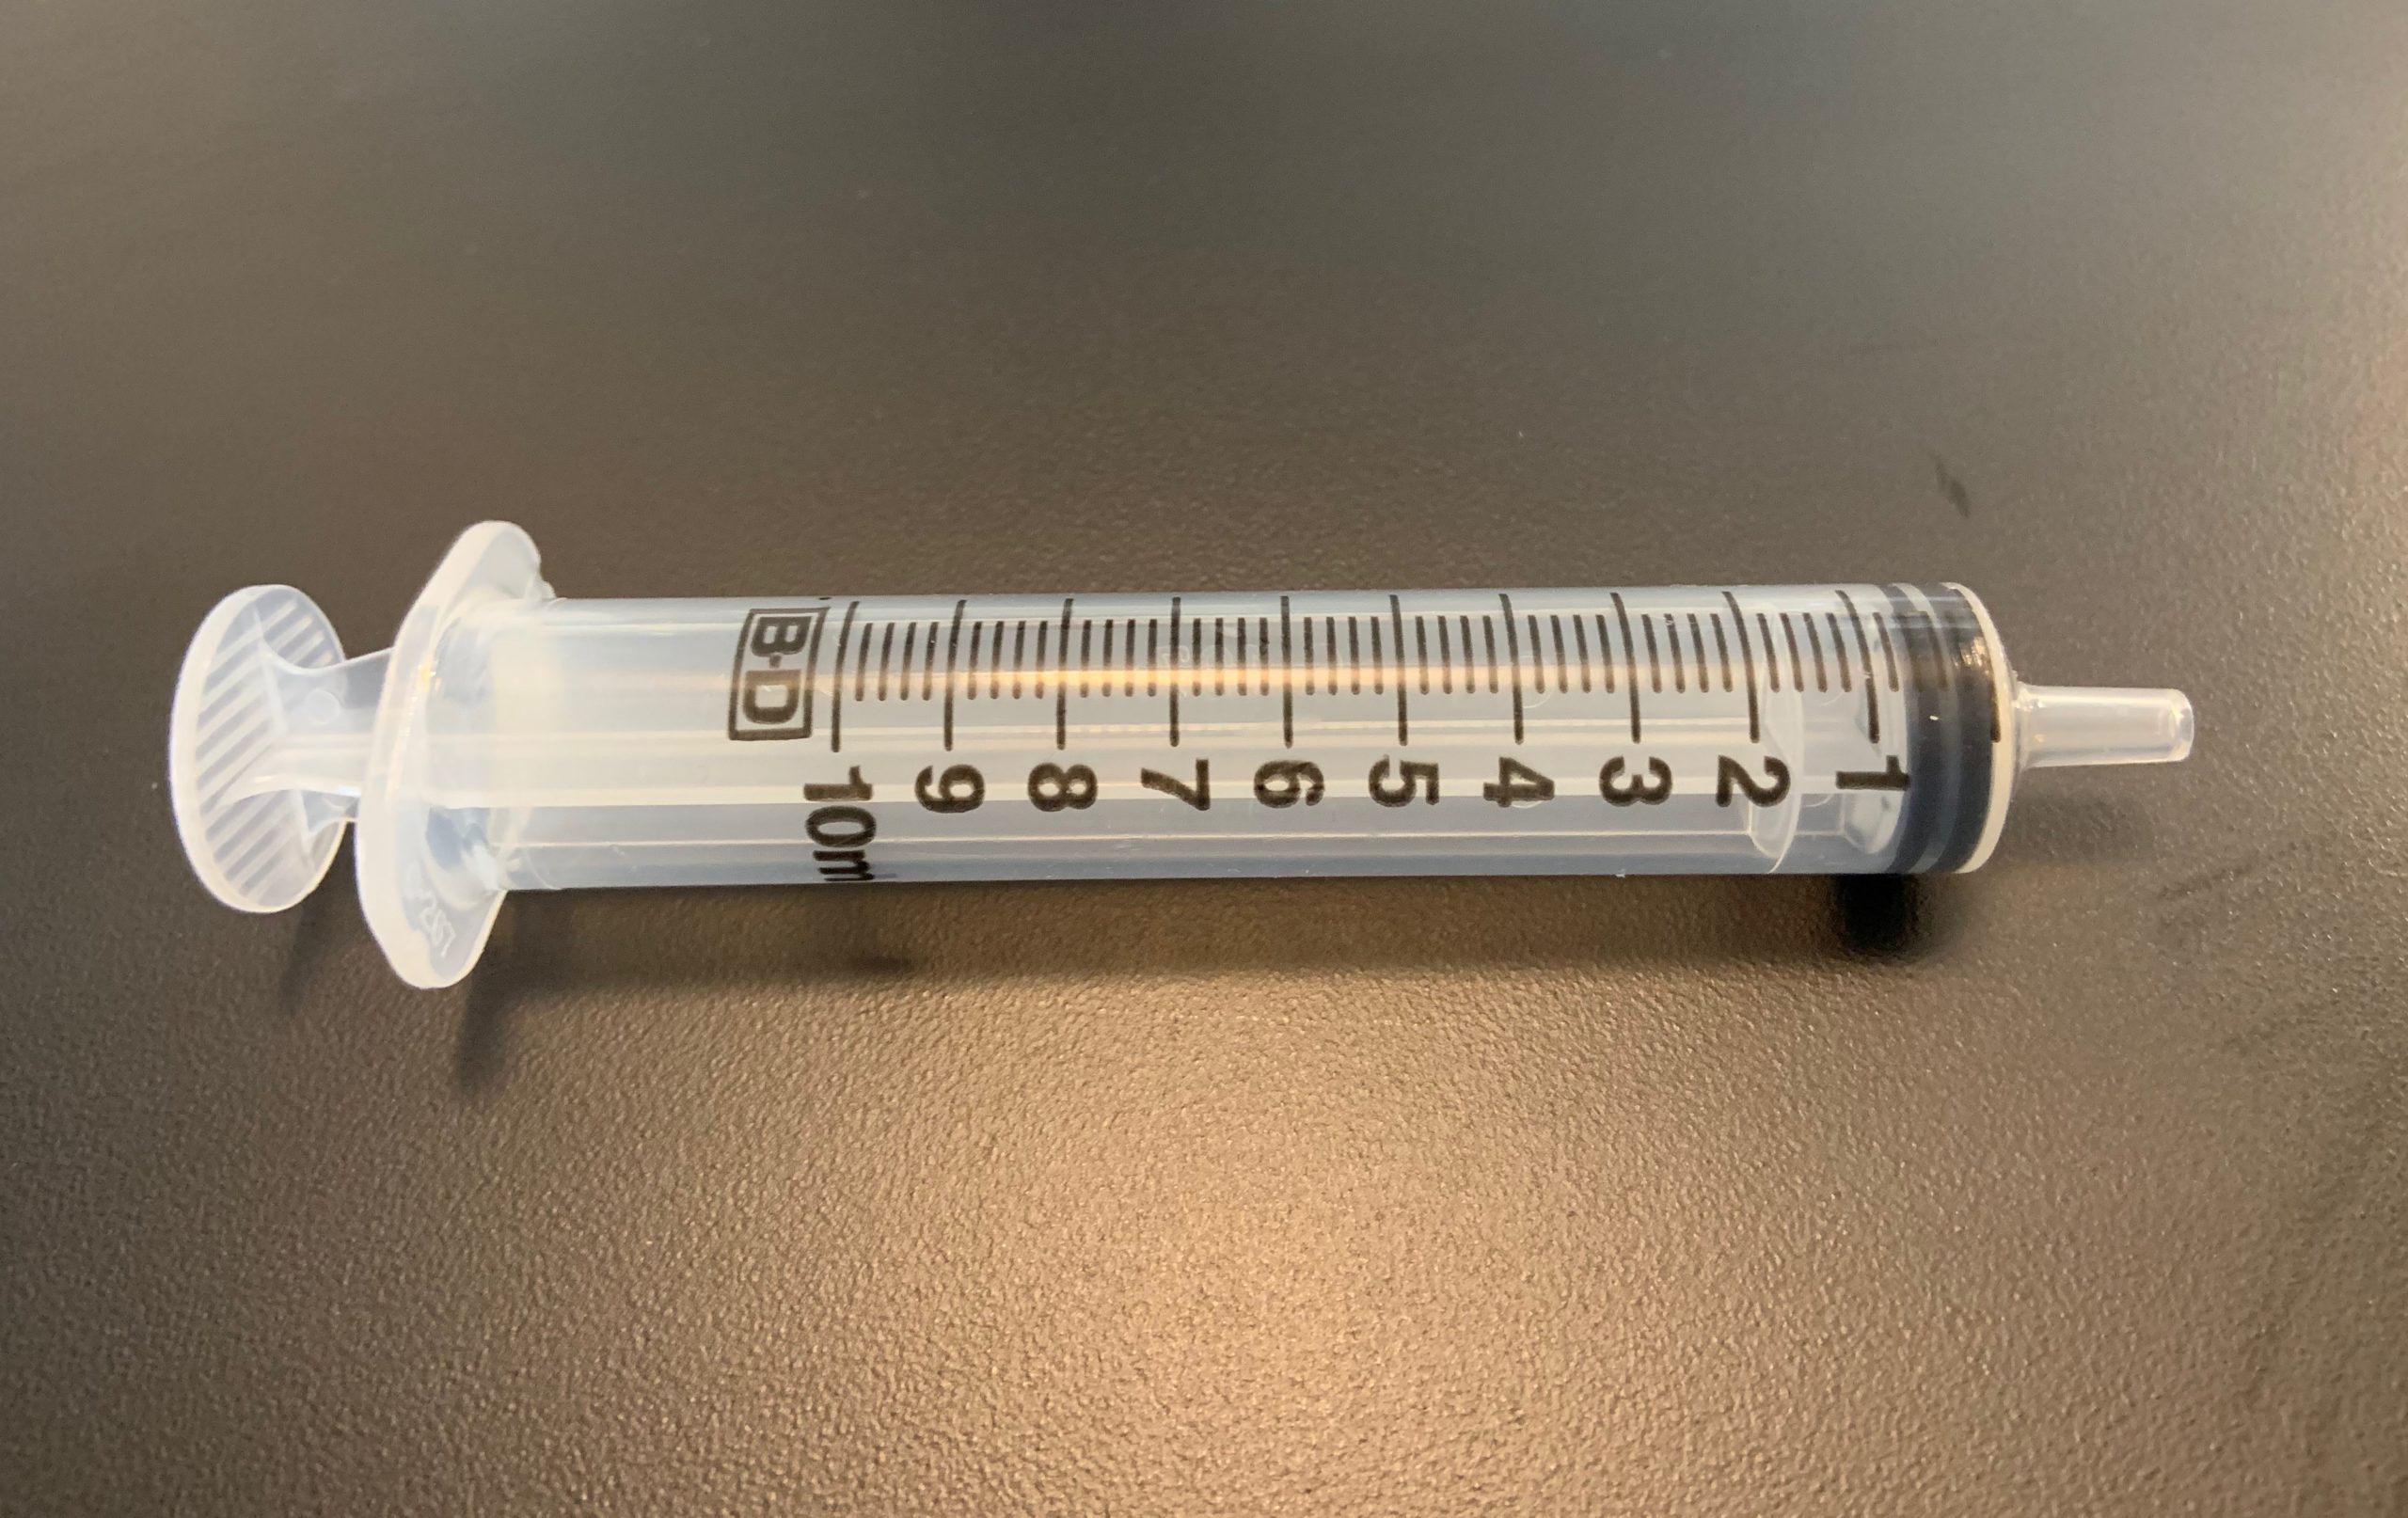  10 Pack Plastic Syringe Liquid Measuring Syringes